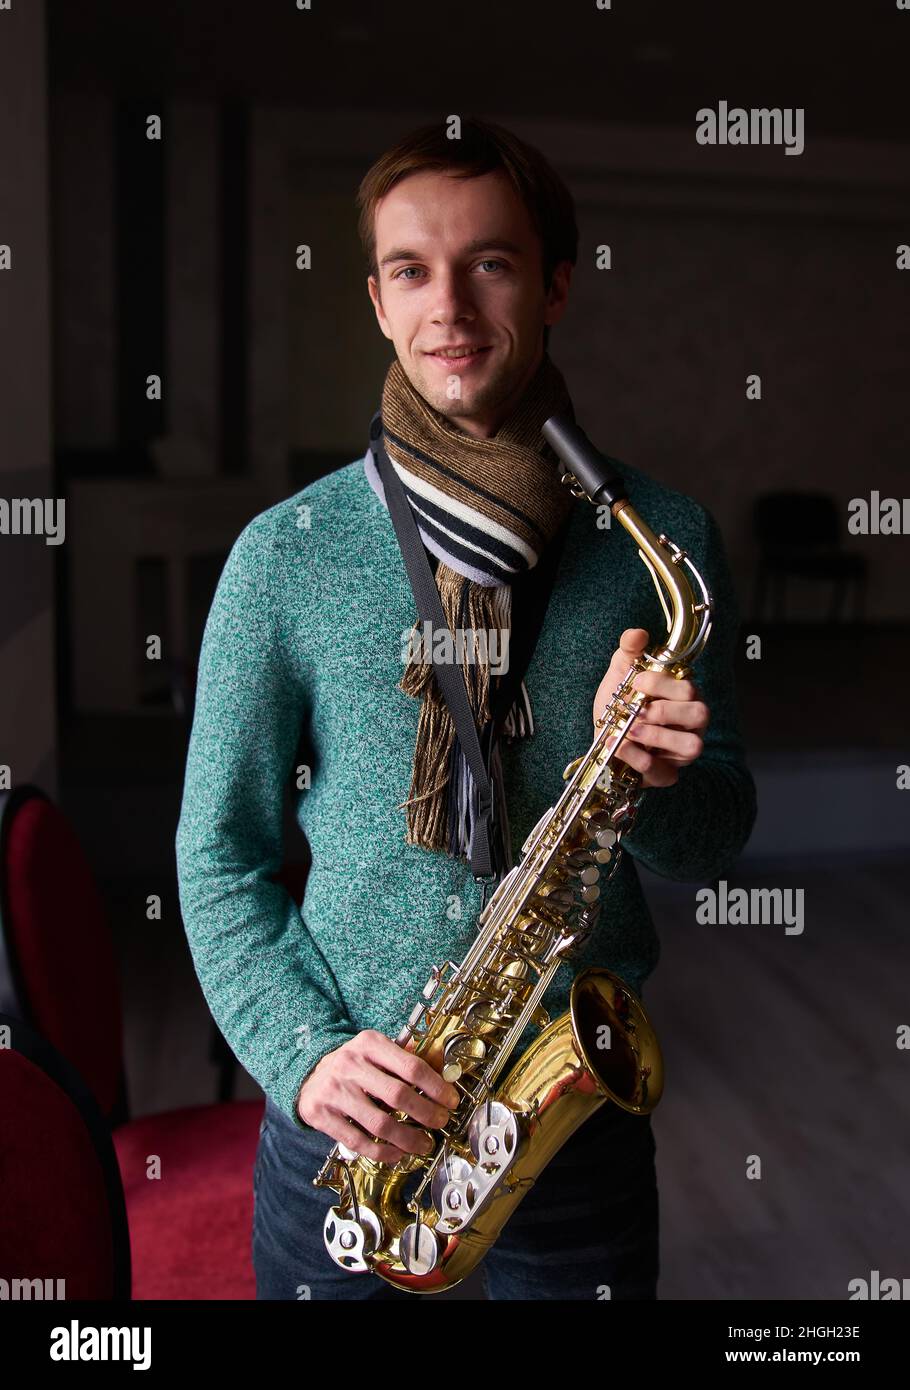 Jeune artiste de musique jazzman tenant un saxophone dans ses mains.La salle sombre de la salle de concert, éclairée par la lumière de la fenêtre Banque D'Images